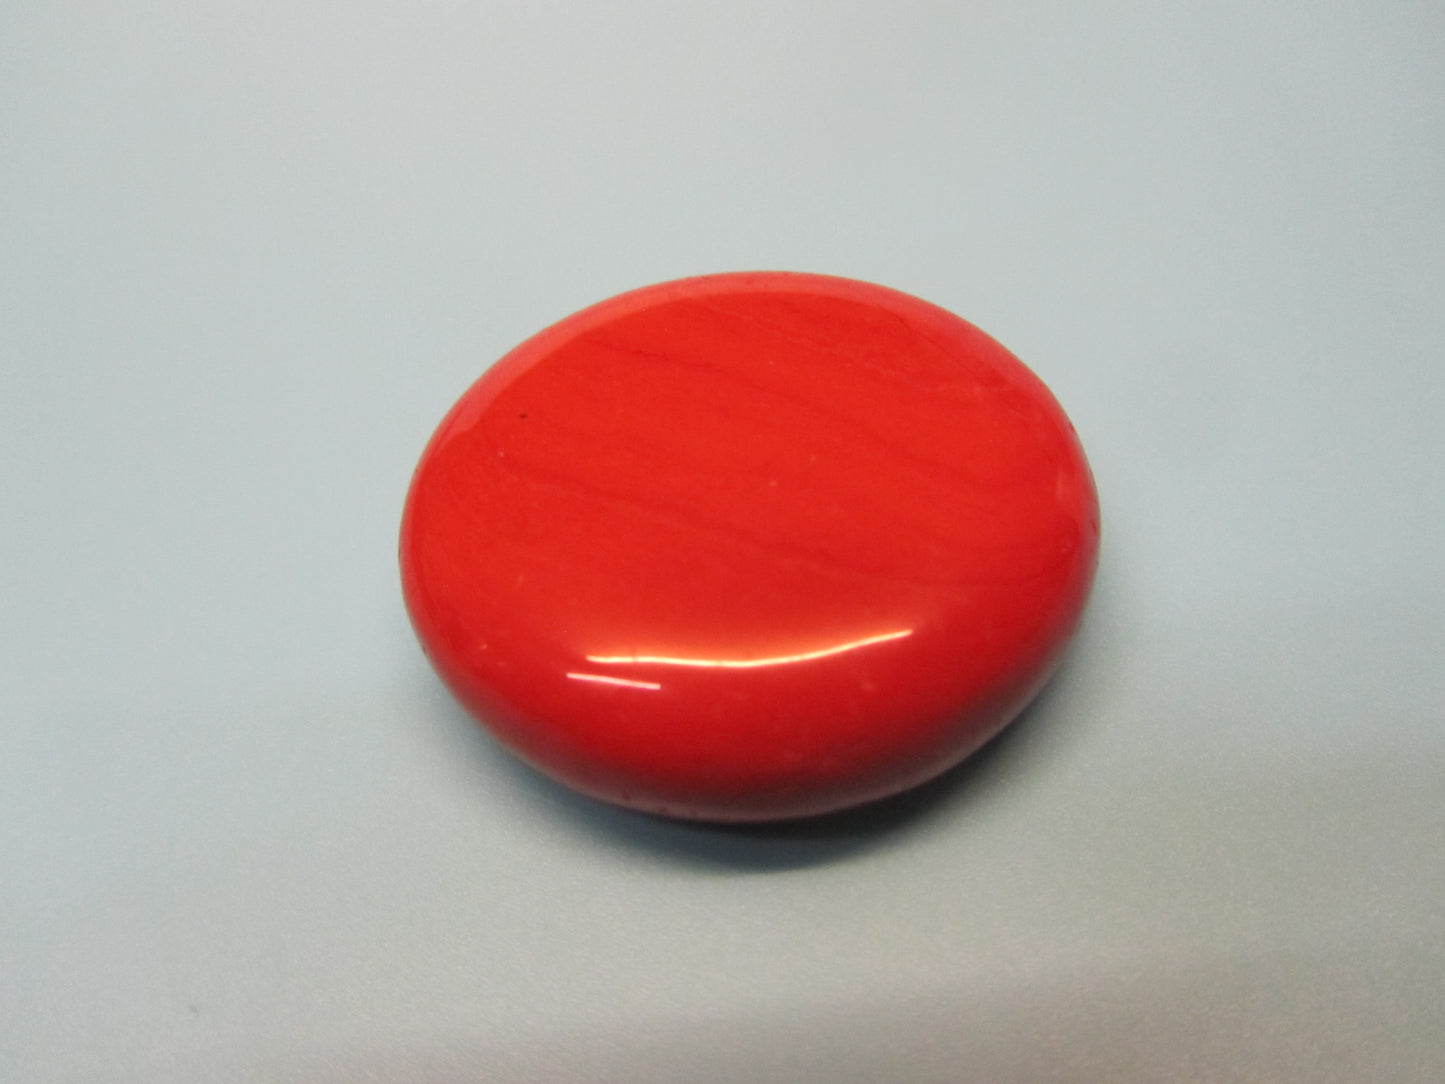 Handschmeichler roter Jaspis ( Der Stein für Magen und Darm )